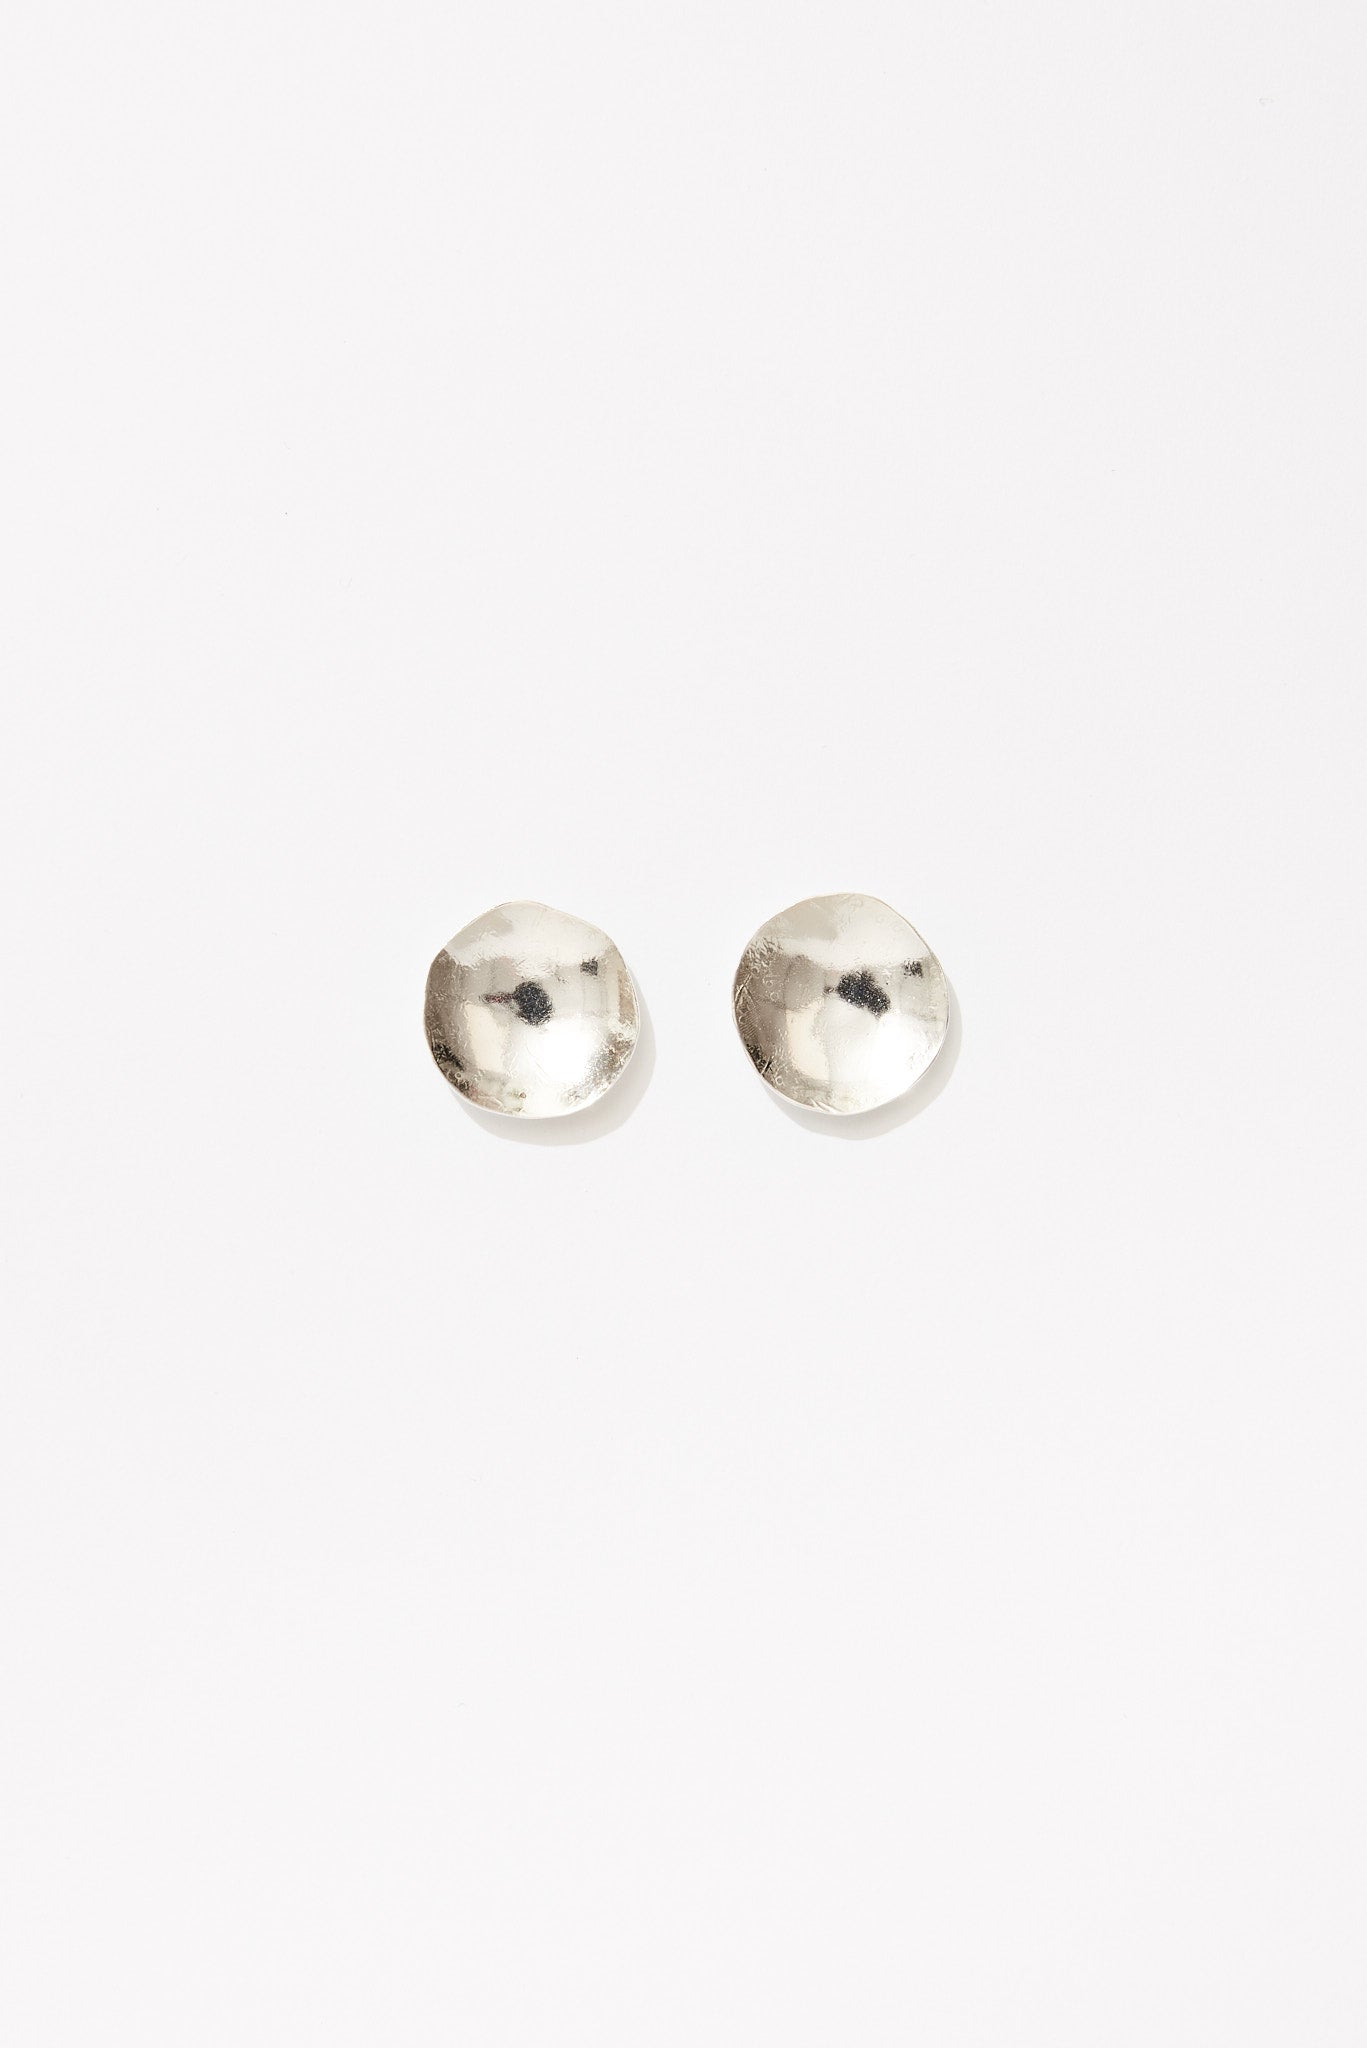 Well Earrings in Sterling Silver